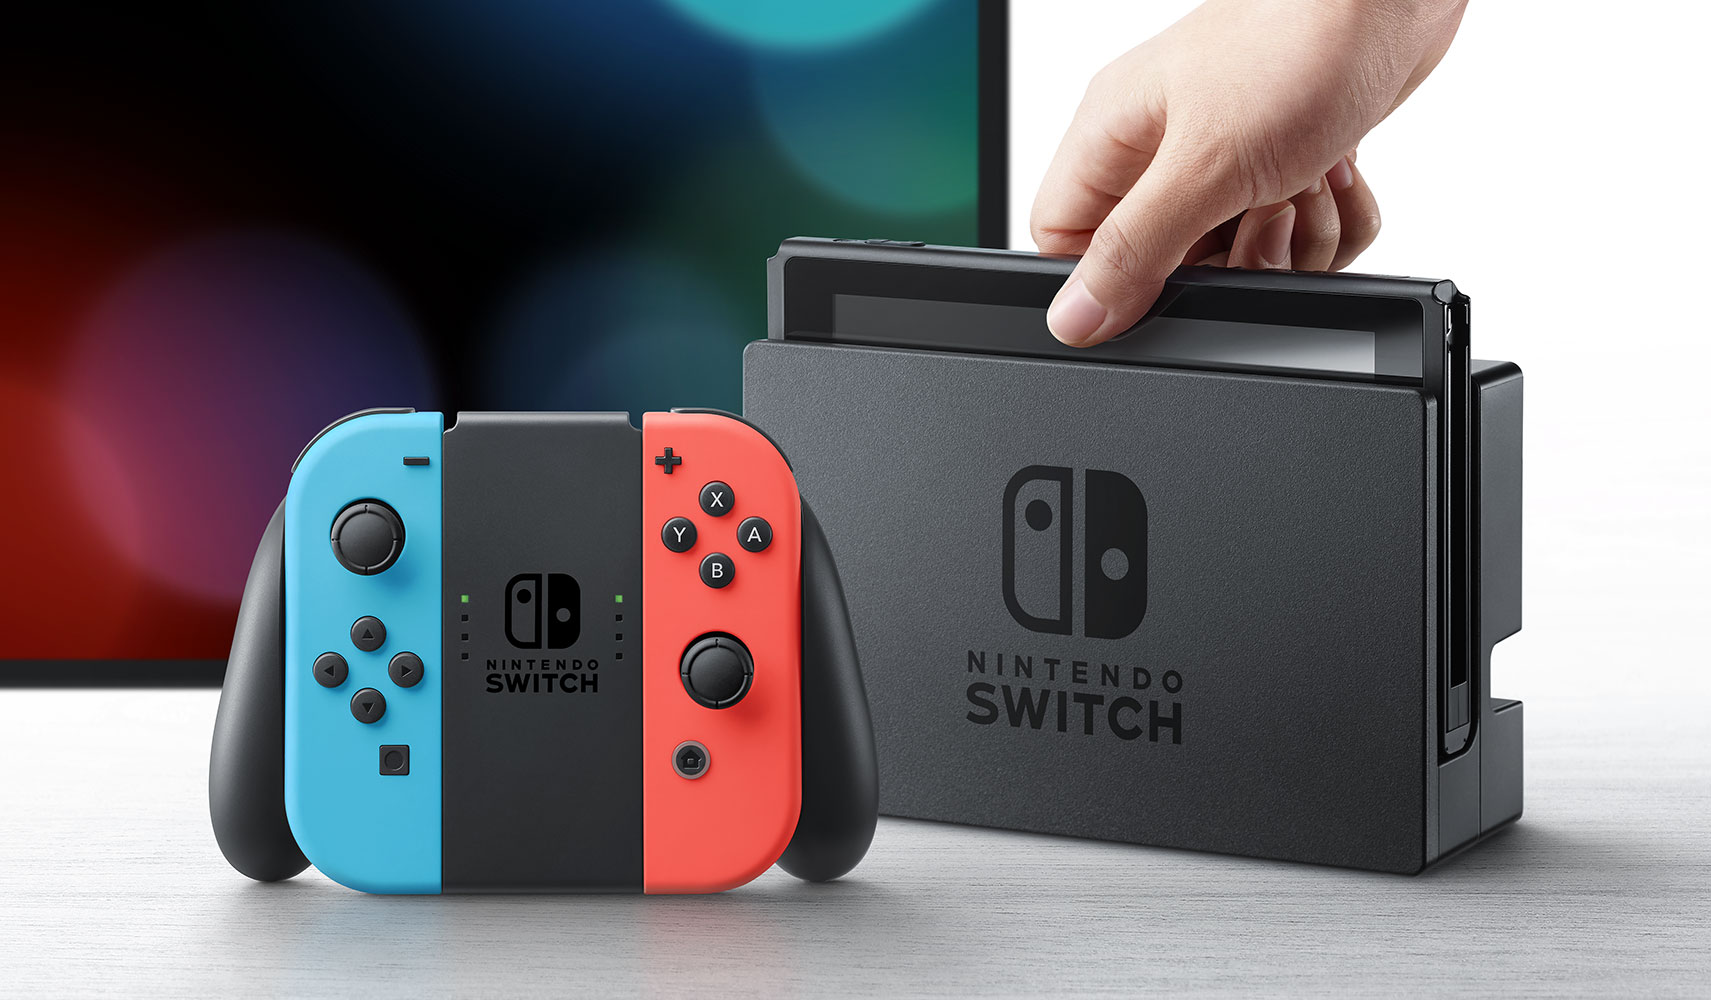 大特価SALE●ニンテンドースイッチ Nintendo Switch 本体のみ 2018年製● ニンテンドースイッチ本体